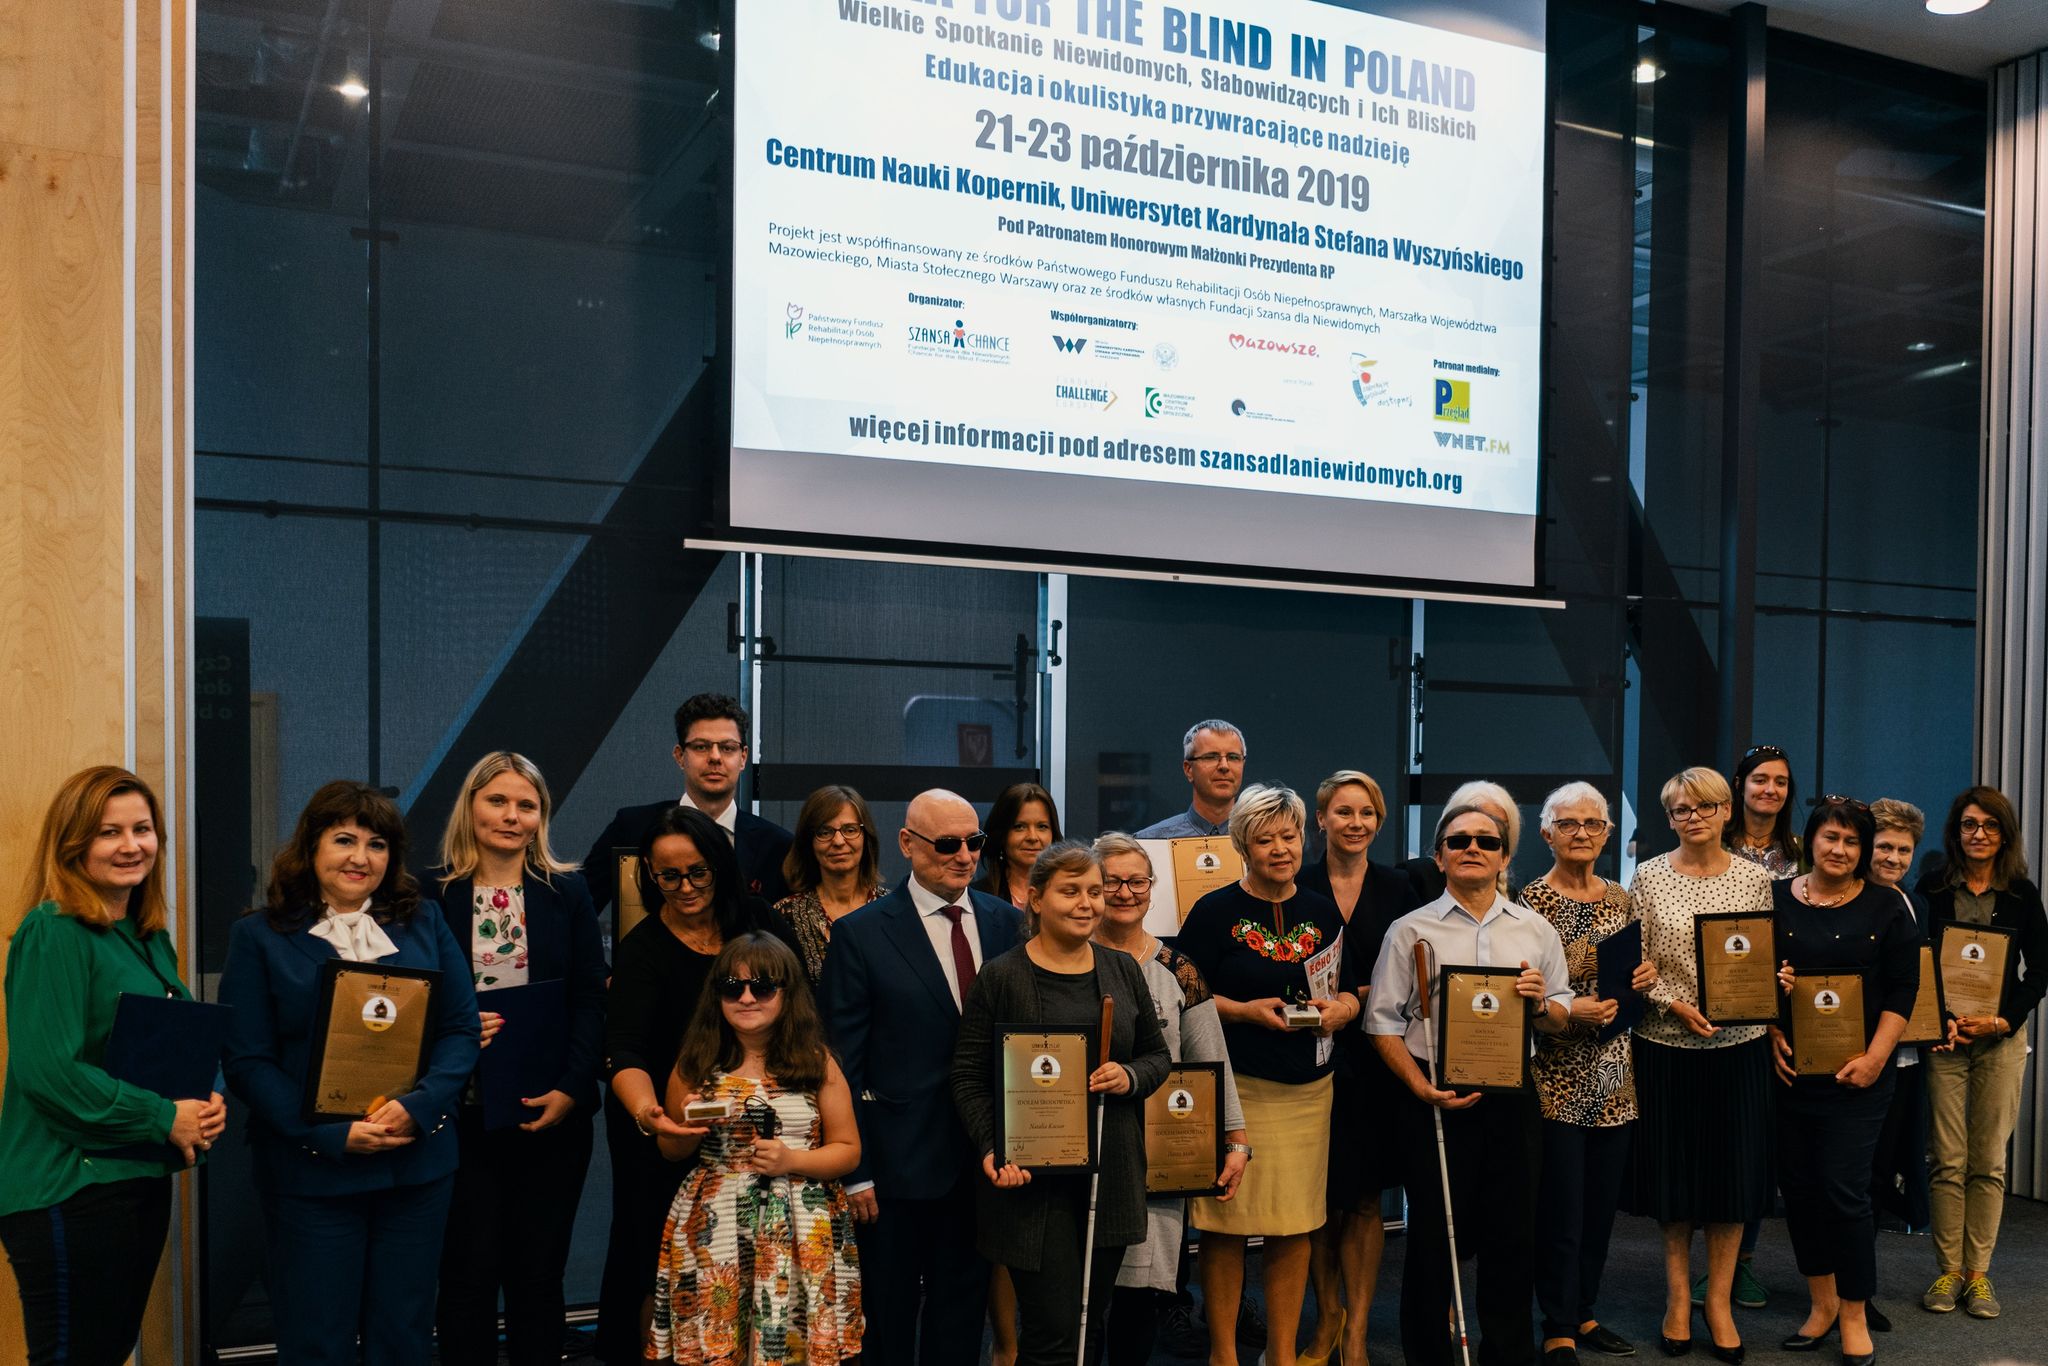 IDOL winners awarded in 2019